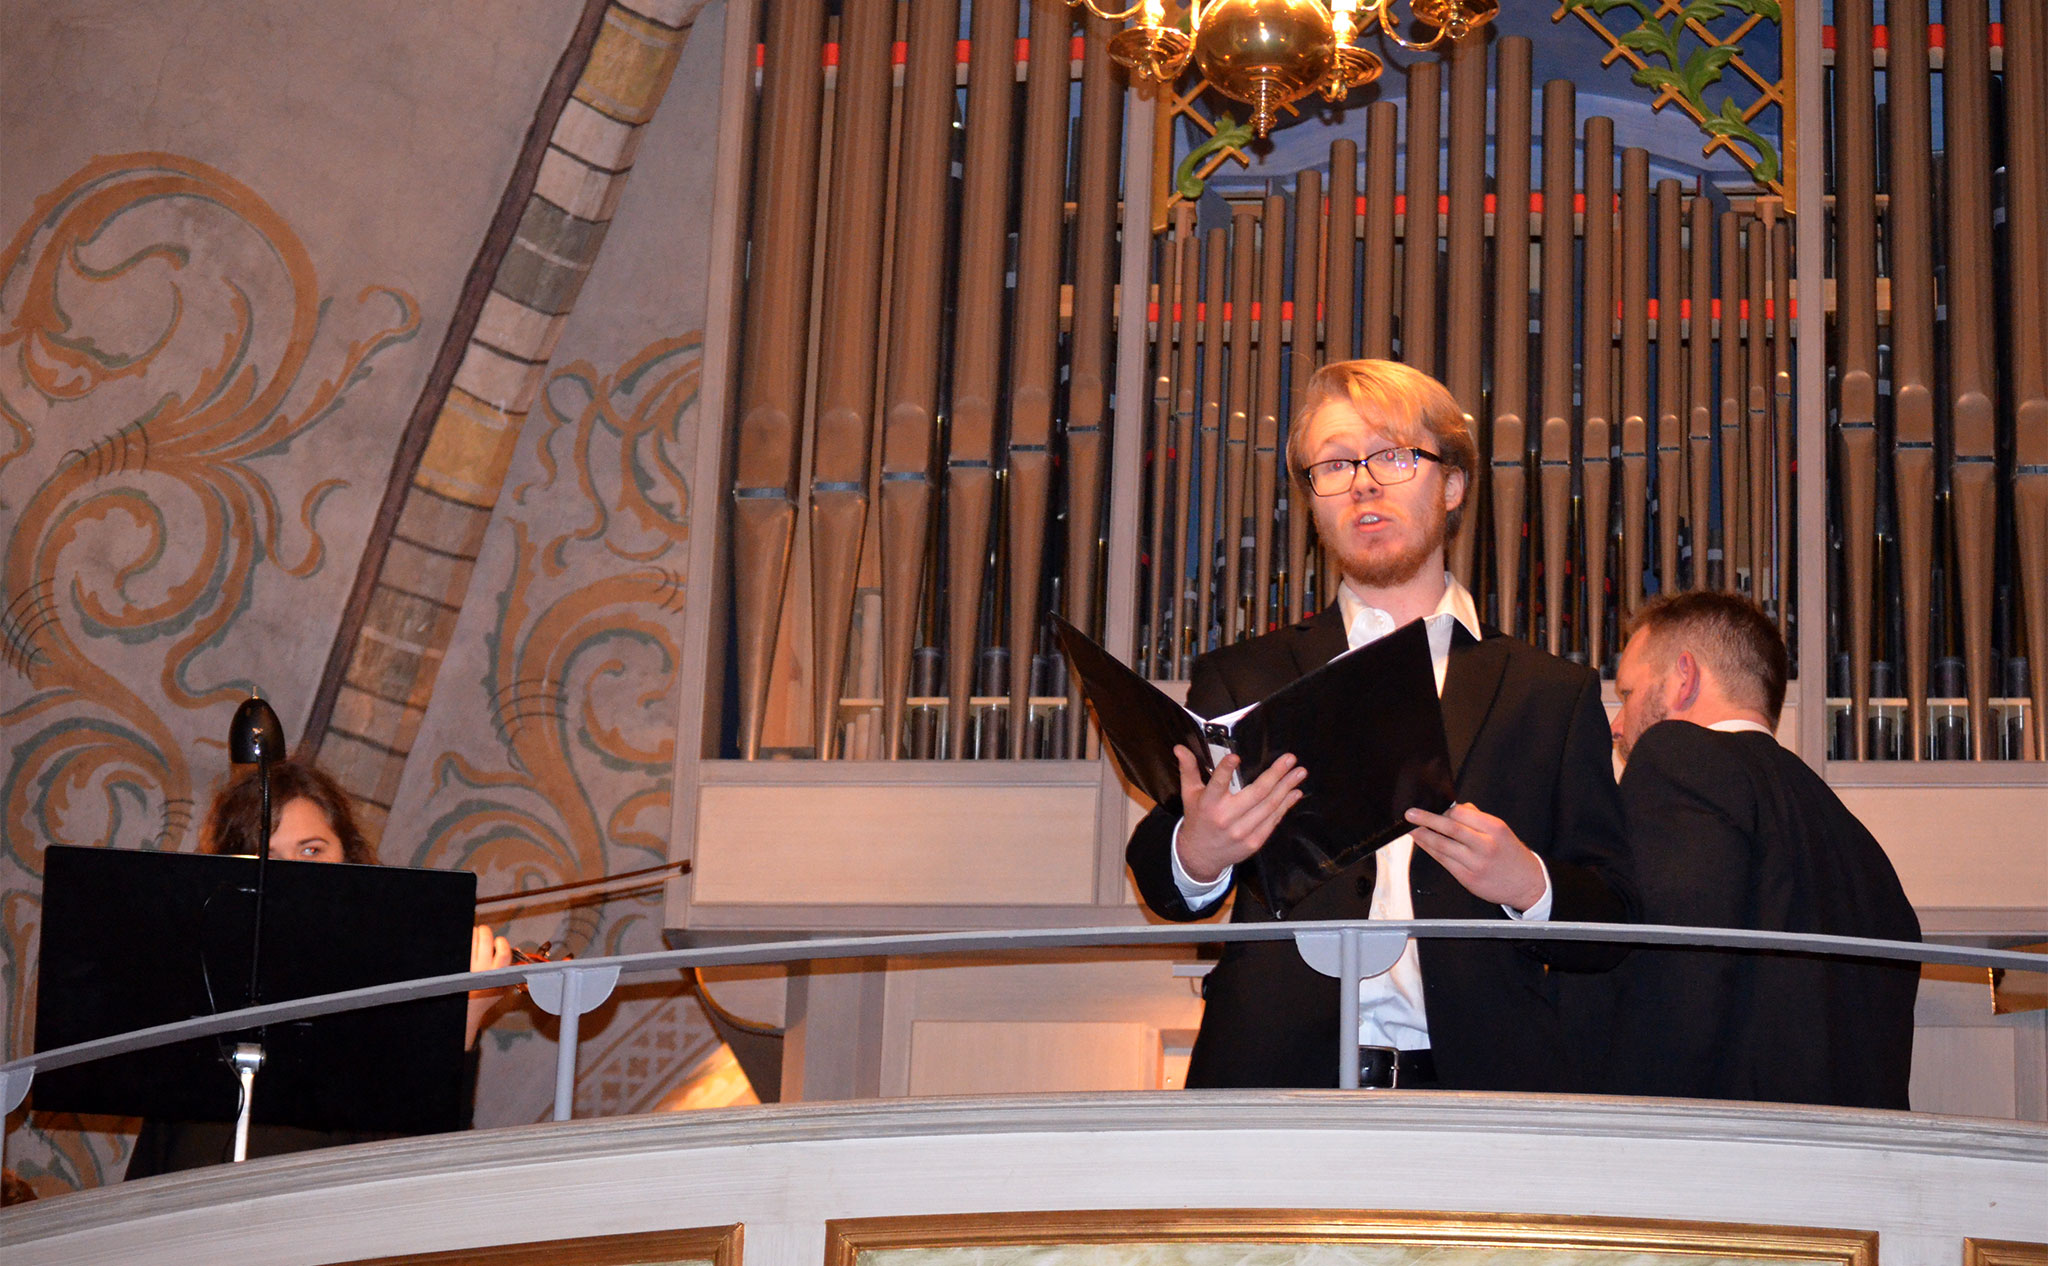 Sångare på balkong i kyrka. Orgel i bakgrunden.